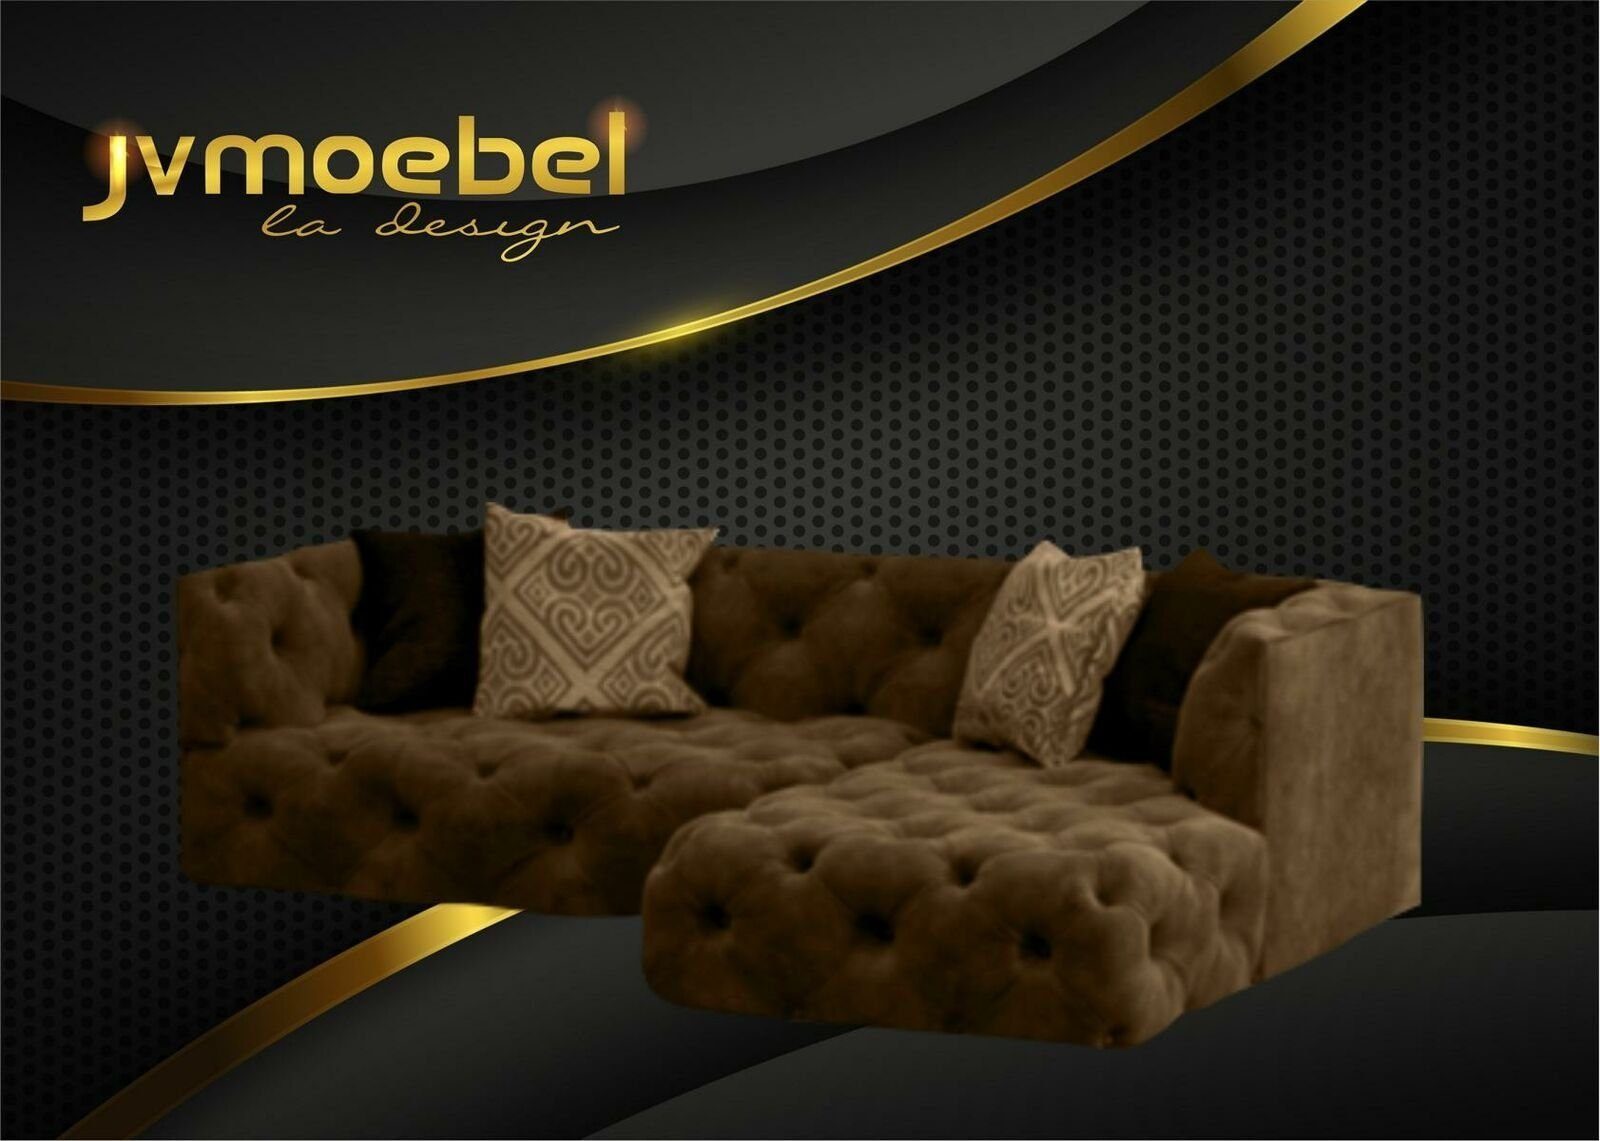 JVmoebel Ecksofa Braunes Chesterfield L-Form Couch Design Polstermöbel Neu, Made in Europe